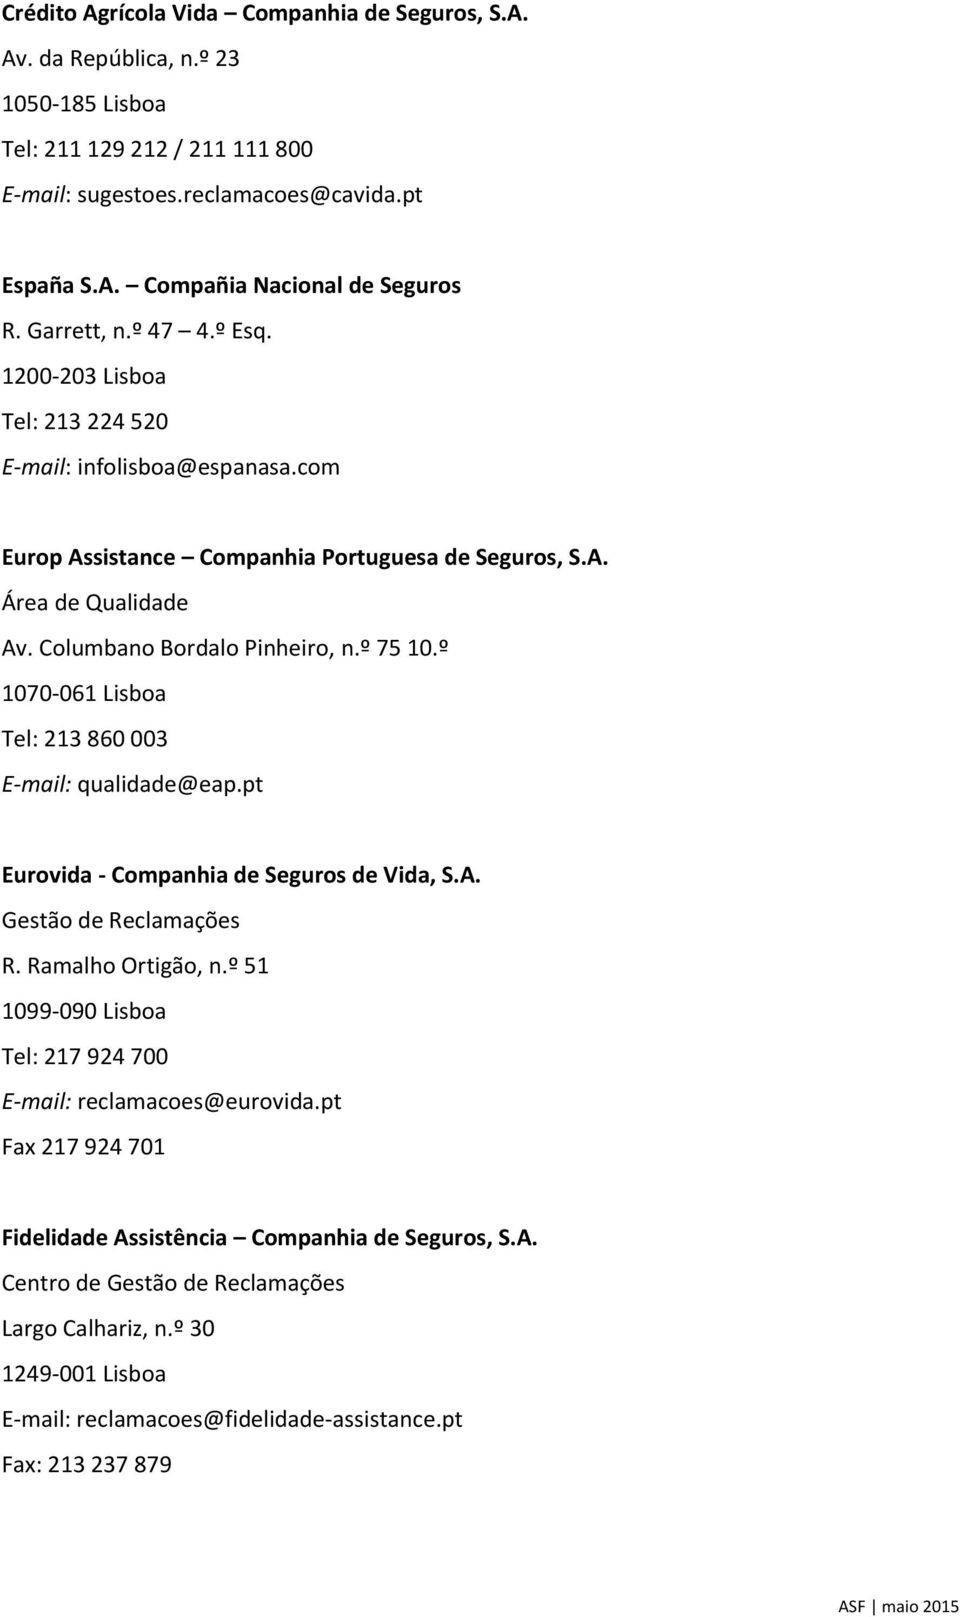 Columbano Bordalo Pinheiro, n.º 75 10.º 1070-061 Lisboa Tel: 213 860 003 E-mail: qualidade@eap.pt Eurovida - Companhia de Seguros de Vida, S.A. R. Ramalho Ortigão, n.